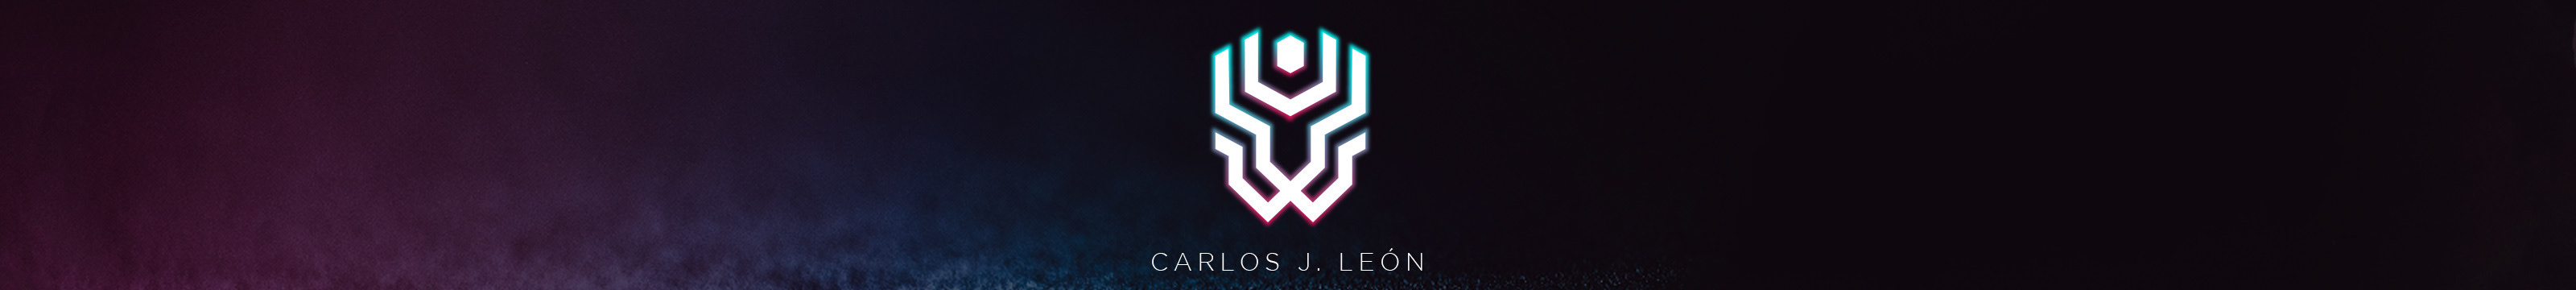 Carlos J. León's profile banner